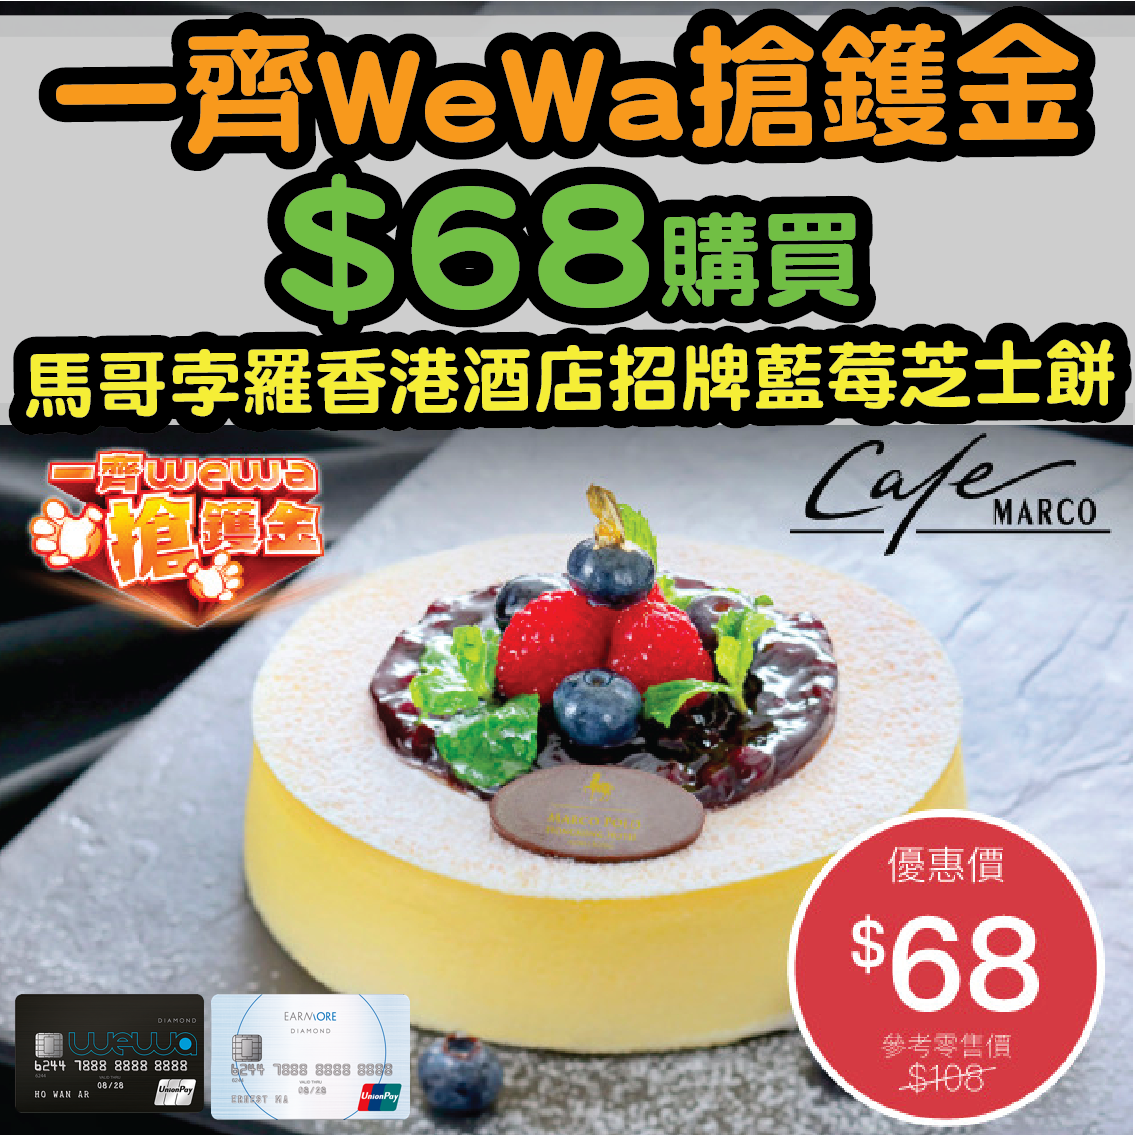 wewa cake-03